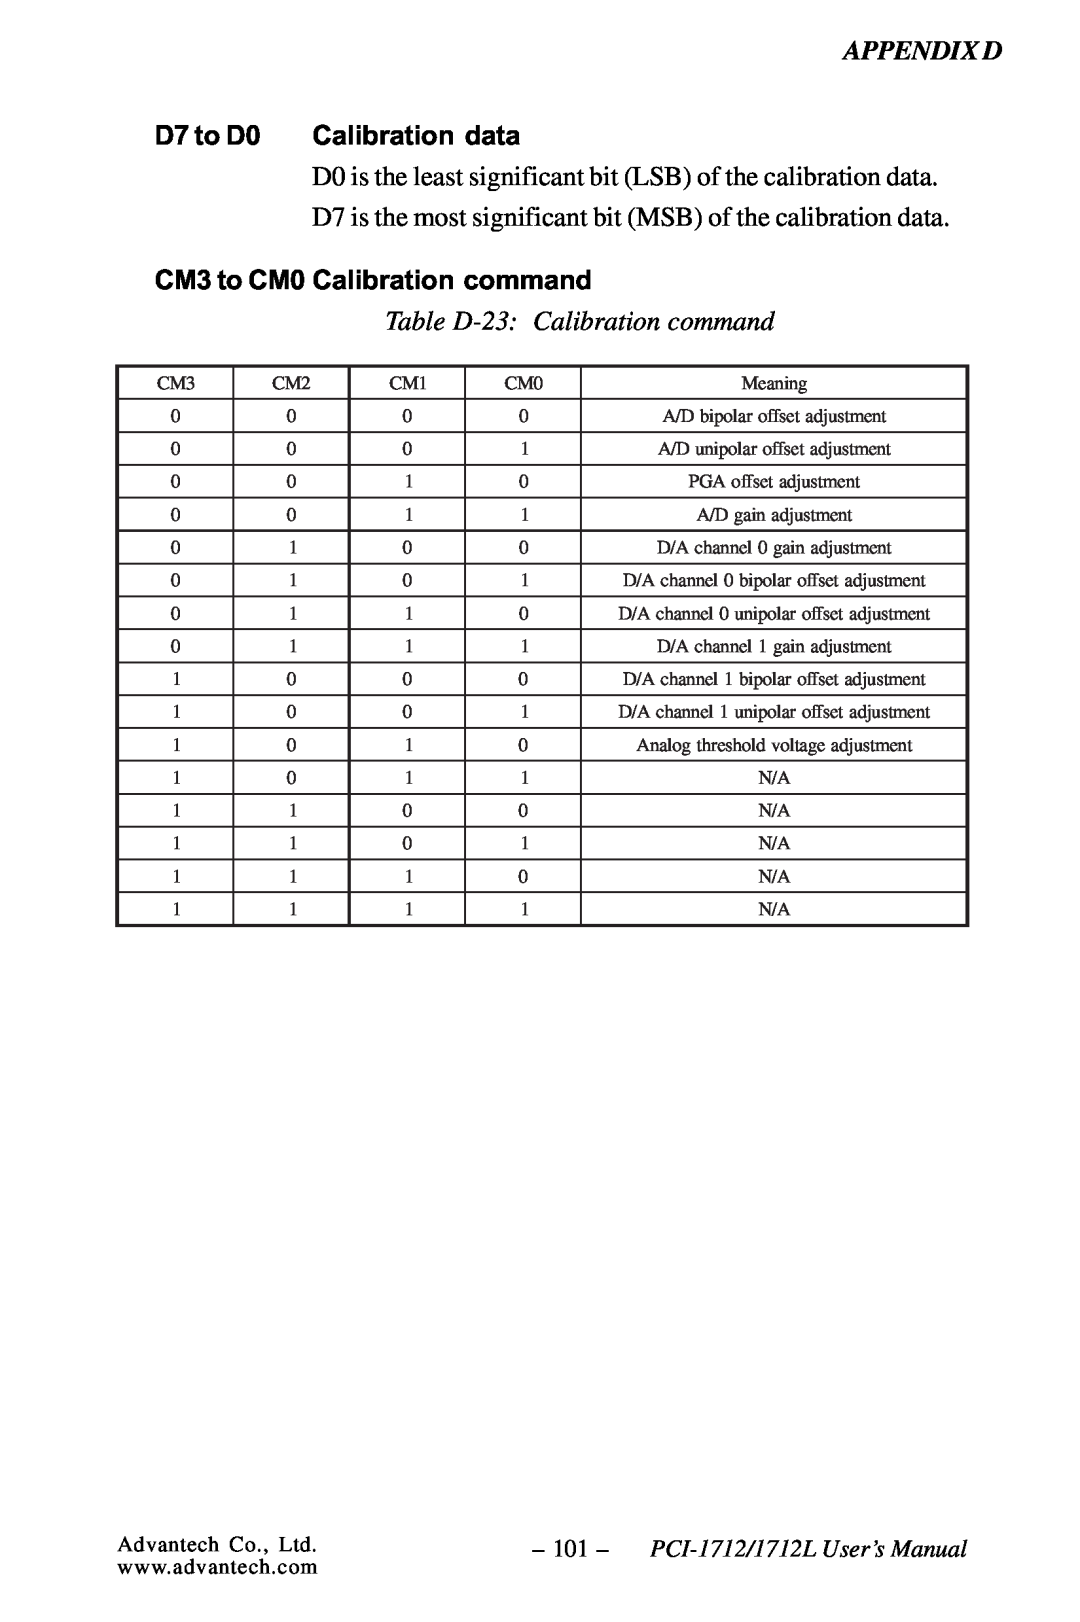 Konica Minolta PCI-1712L Table D-23 Calibration command, D7 to D0, Calibration data, CM3 to CM0 Calibration command 